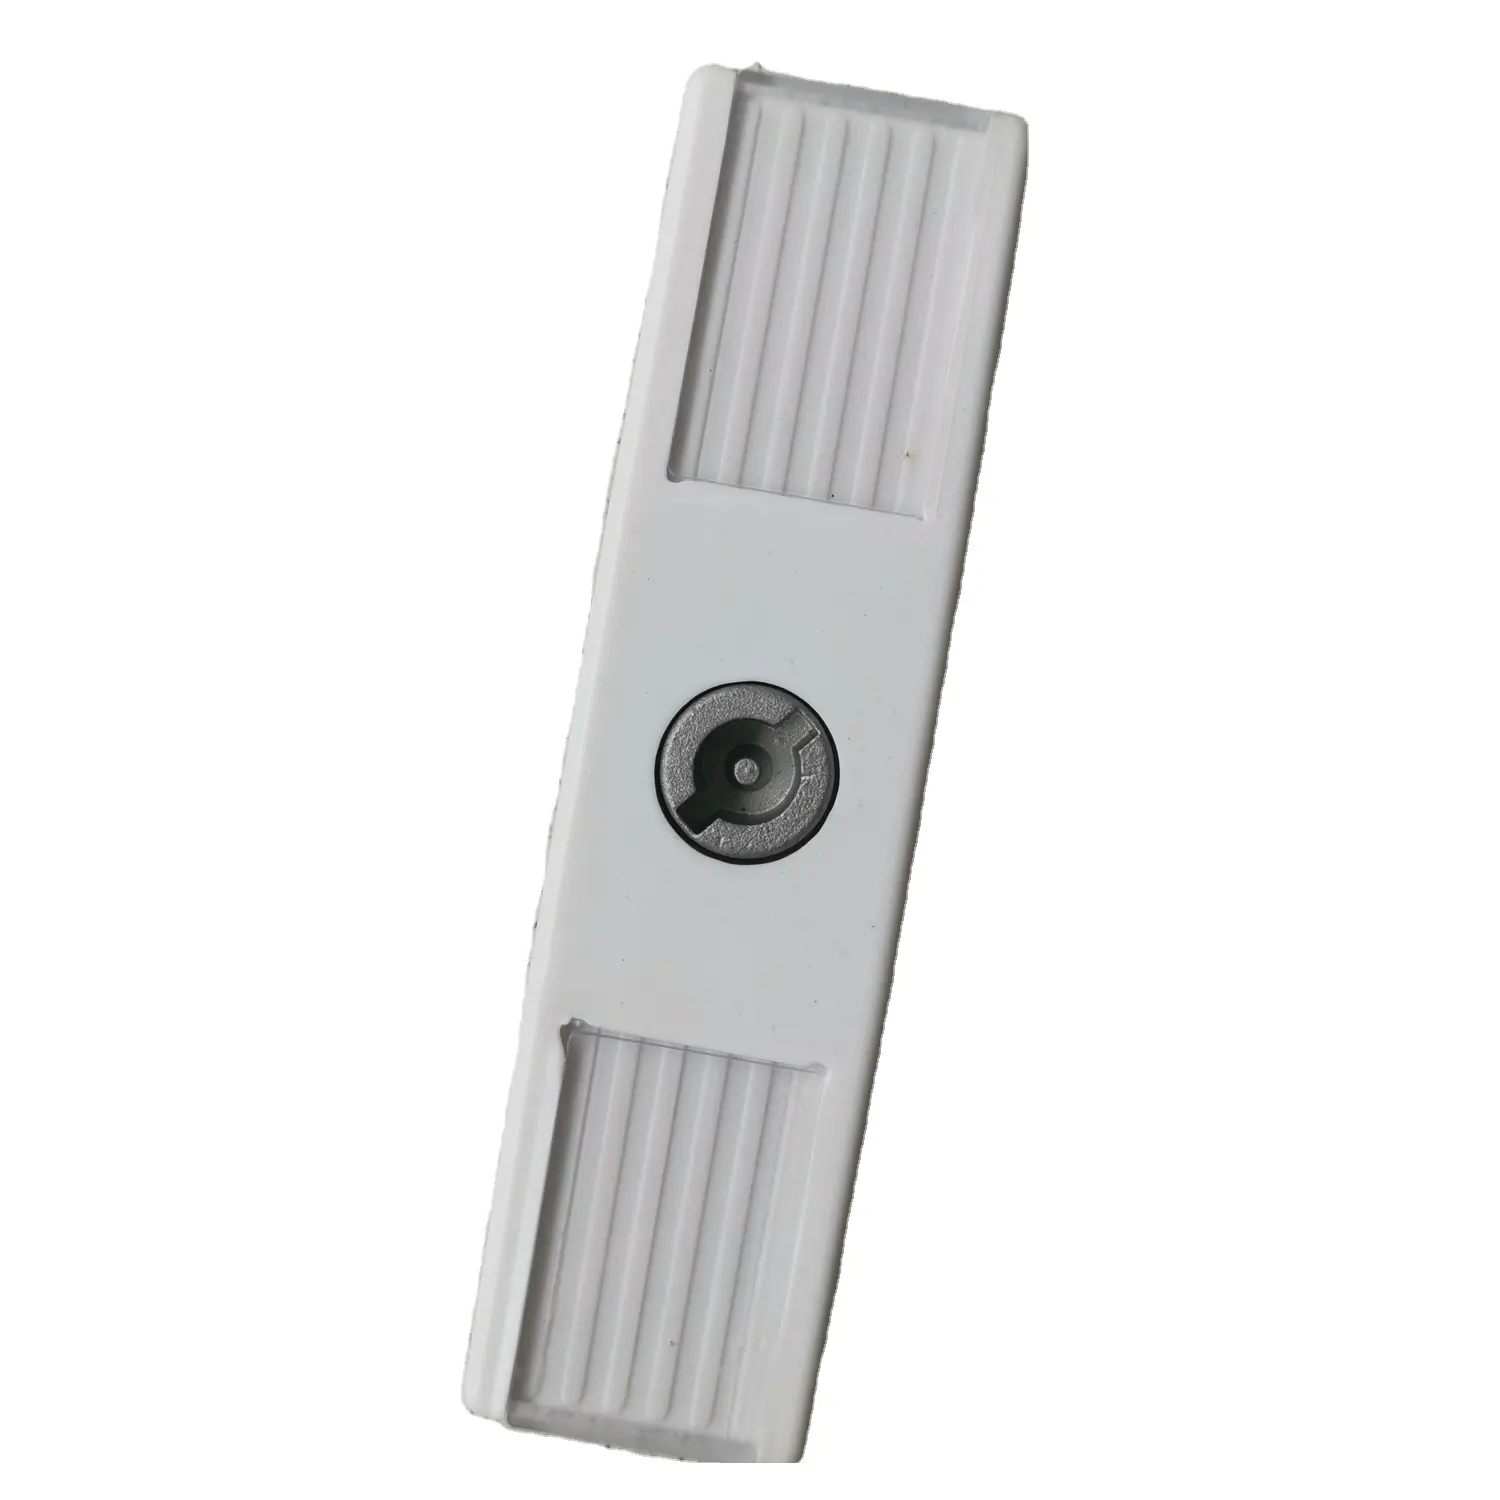 FS2453 RITTAL مرفقات استخدام قفل خزانة الصناعية MS قفل كامة لغسل آلات الزنك سبائك رسم BT2453 باوتاي بنفايات